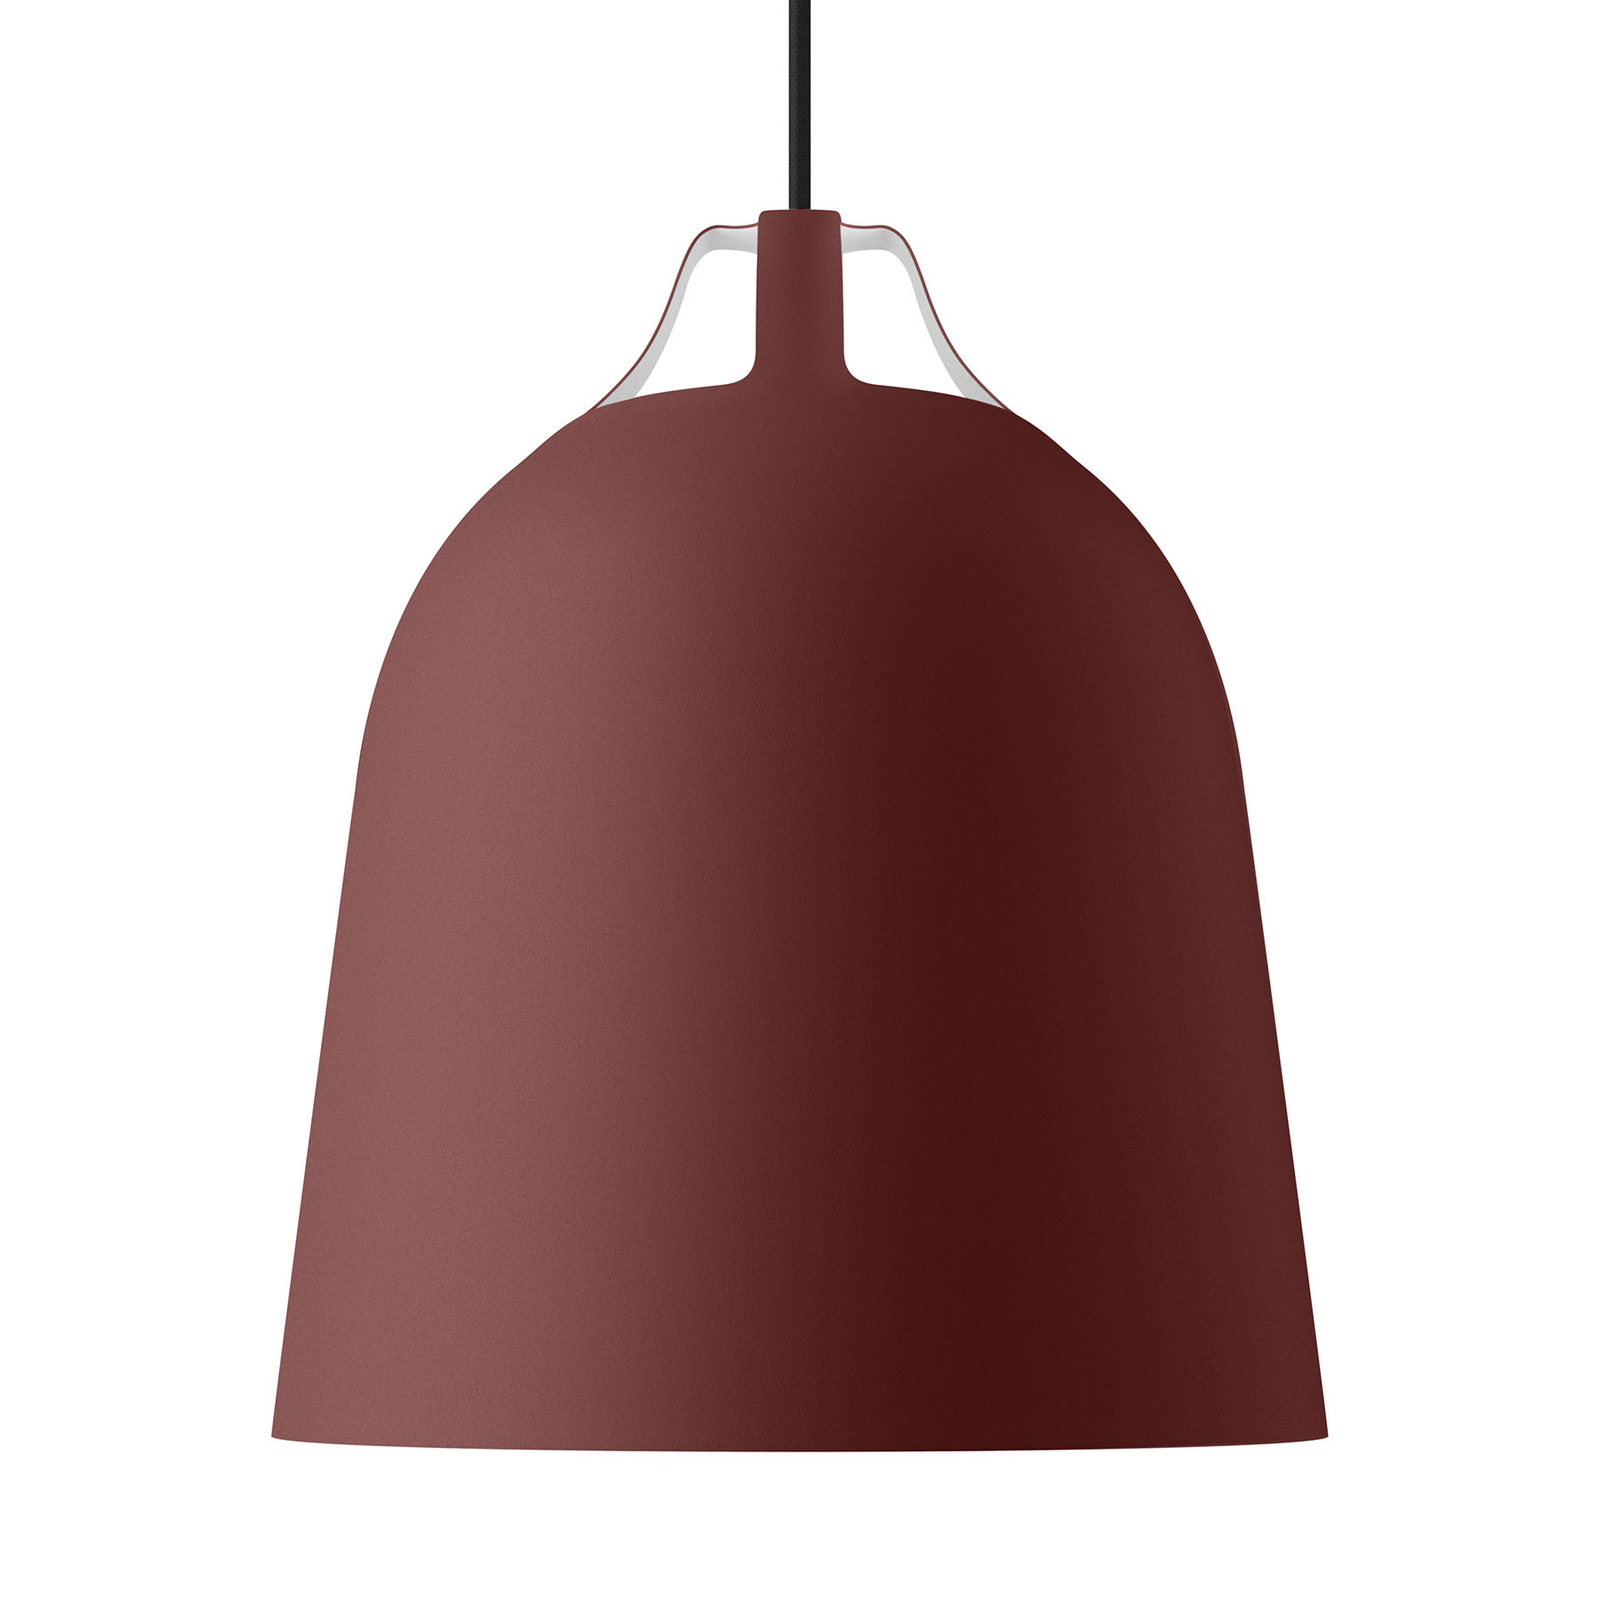 EVA Solo Clover lampa wisząca Ø 29cm, czerwona